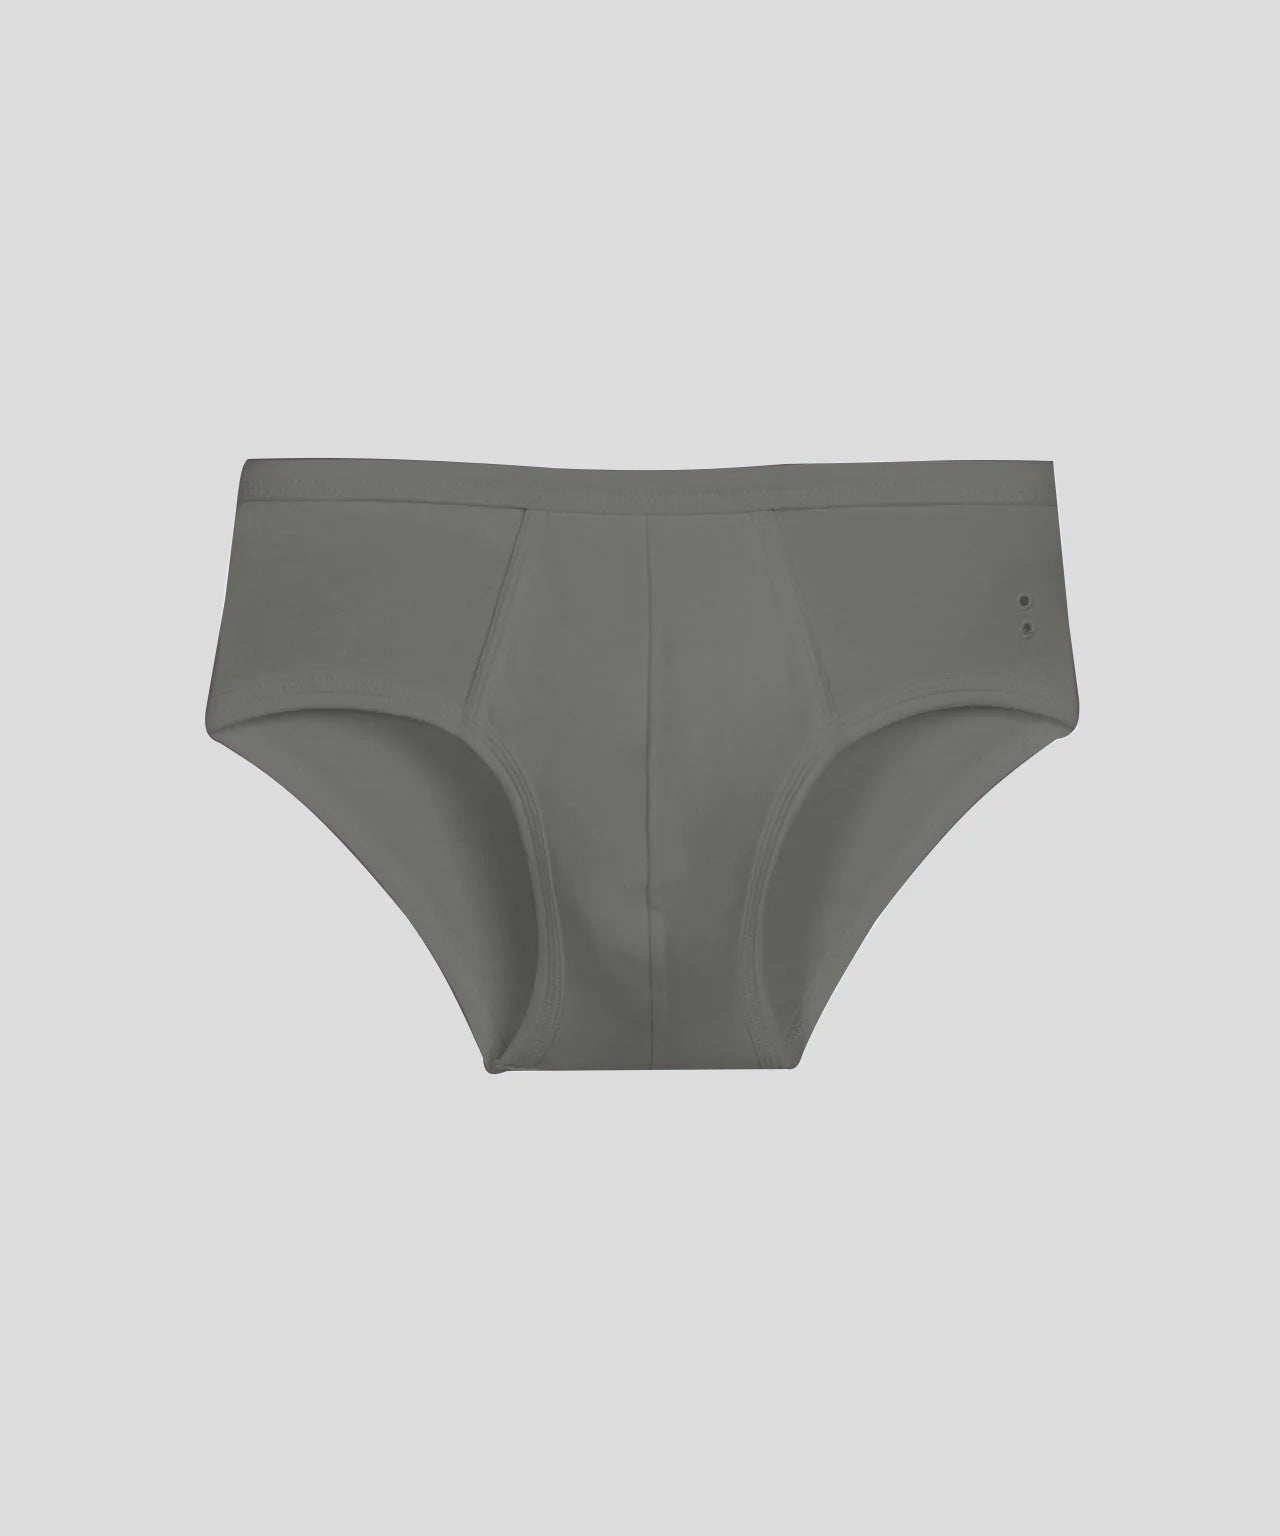 Rhonda Shear Lace Underwear briefs Dark green size XL - beyond exchange